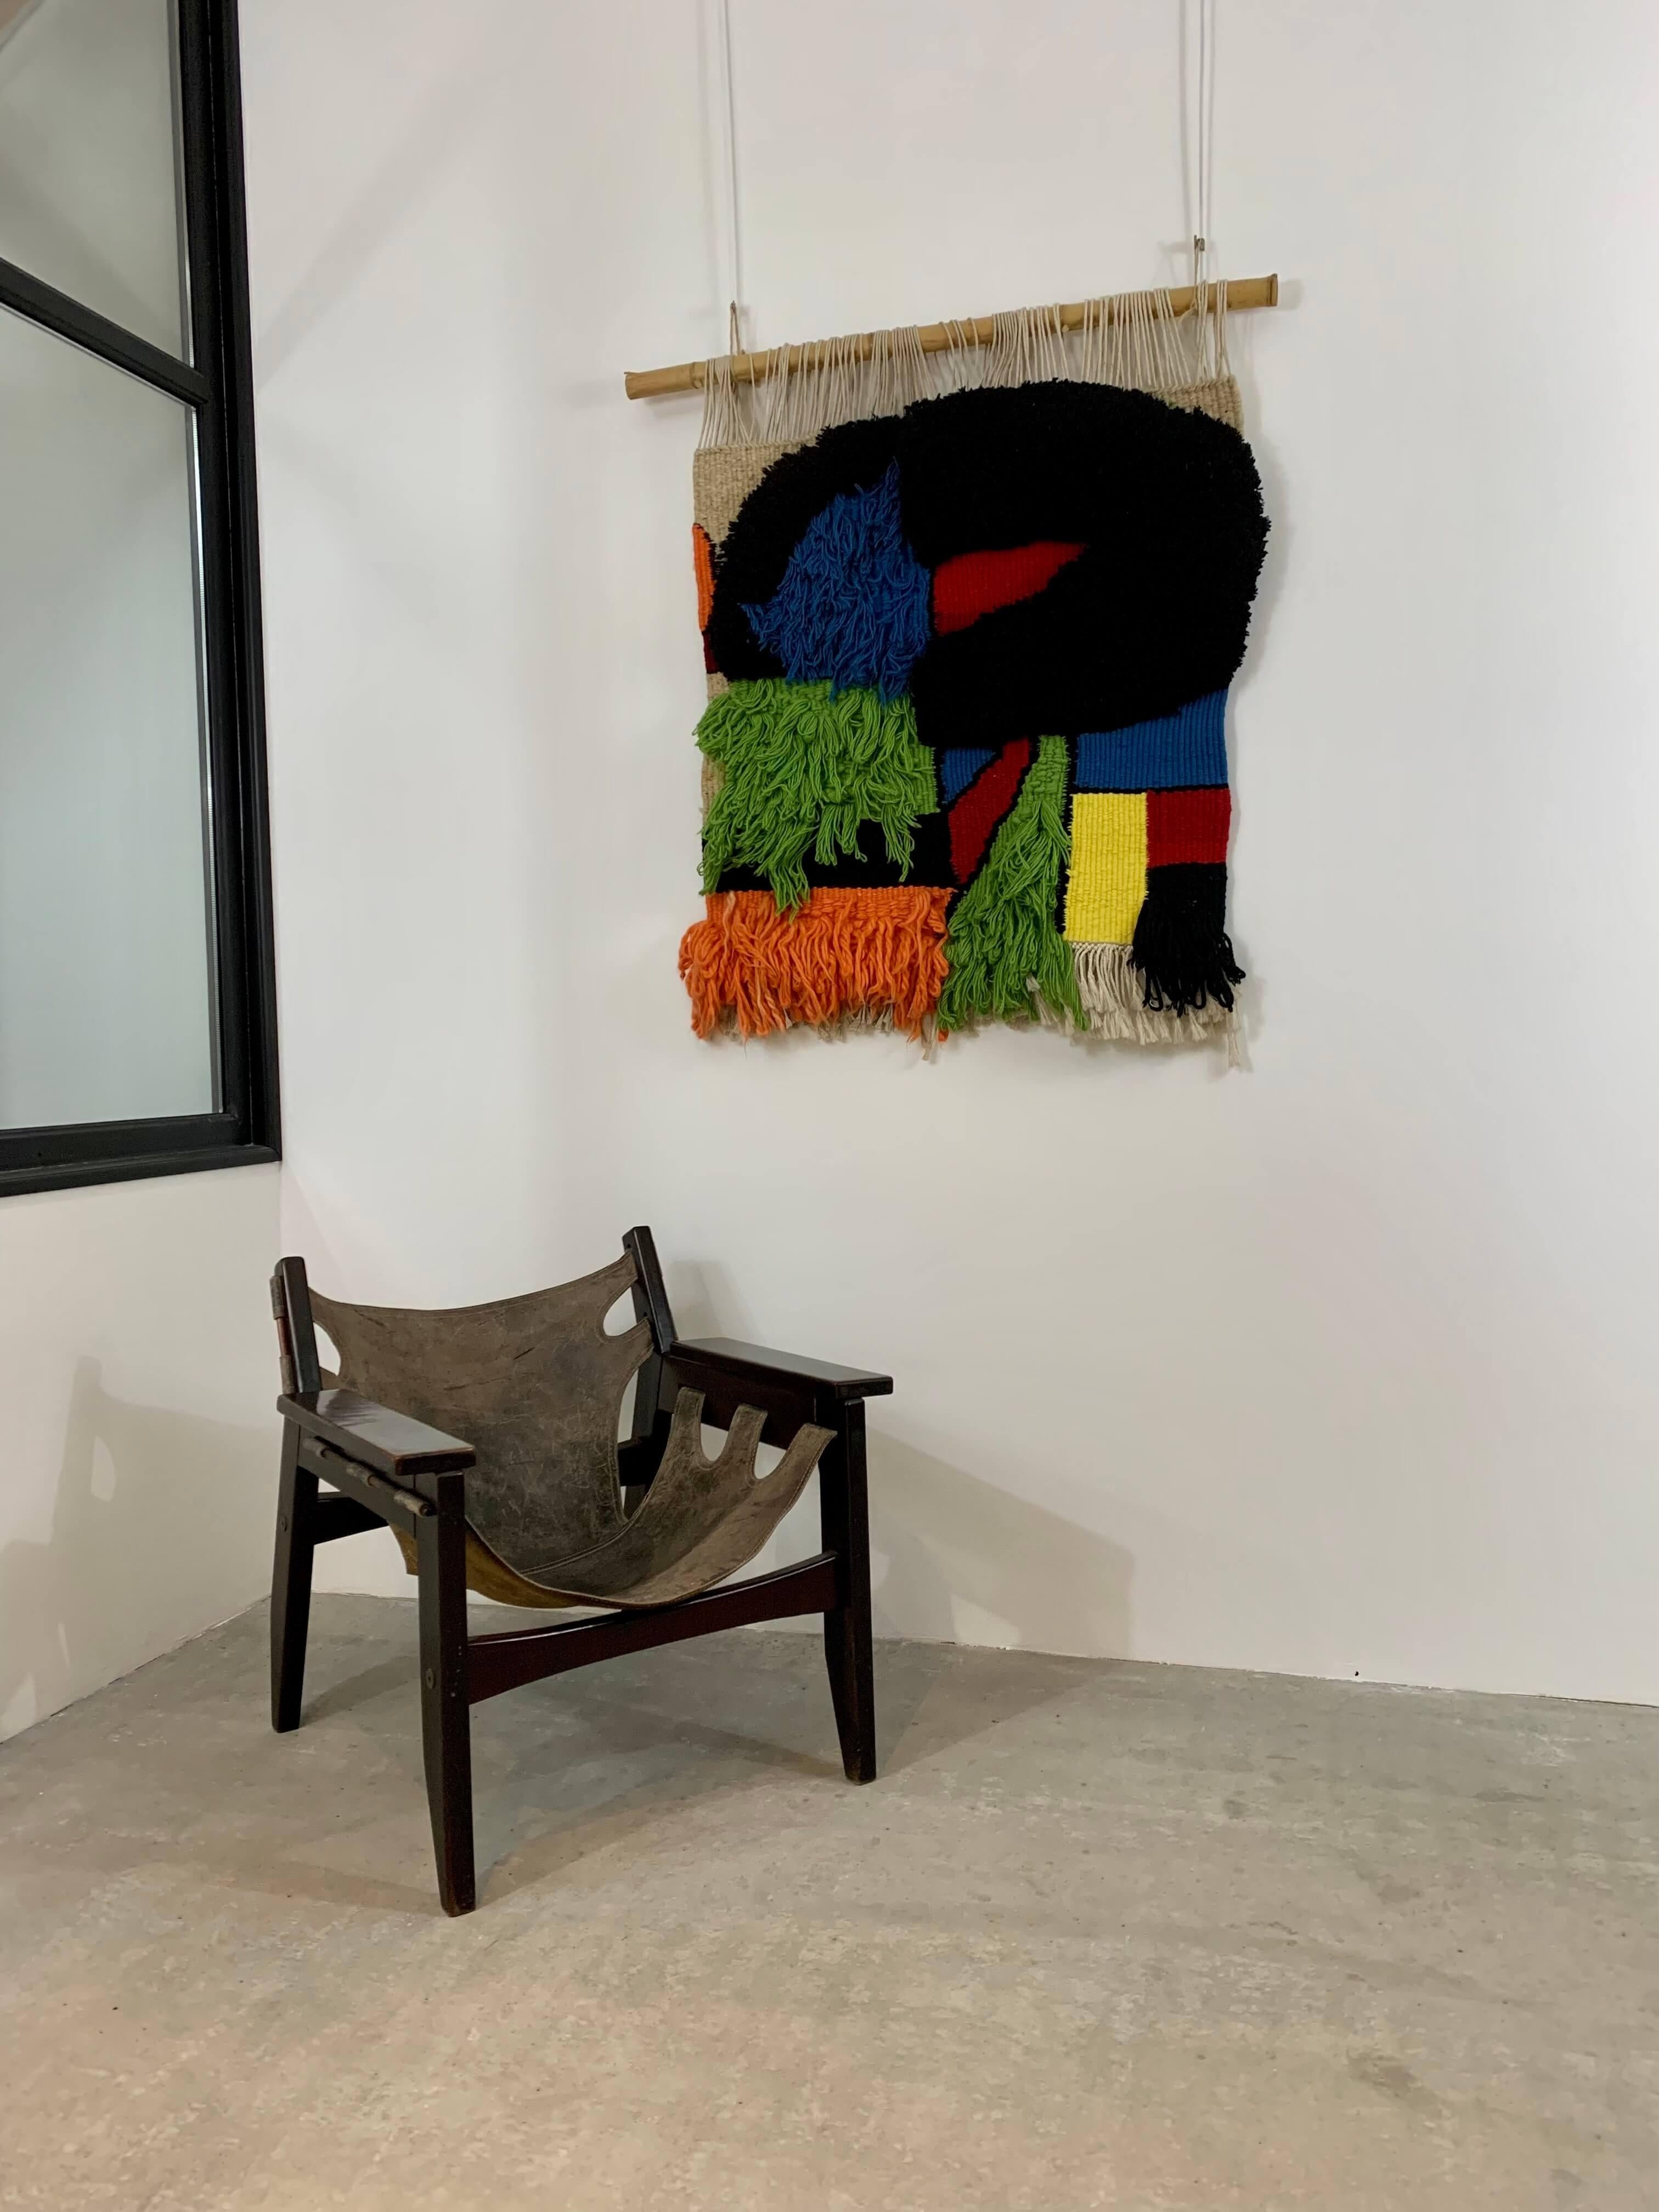 Tapisserie murale artistique tridimensionnelle en très bon état.
Art abstrait avec les formes et les couleurs bien caractéristiques de Joan Miro.

Pièce unique 
Espagne, vers 1970